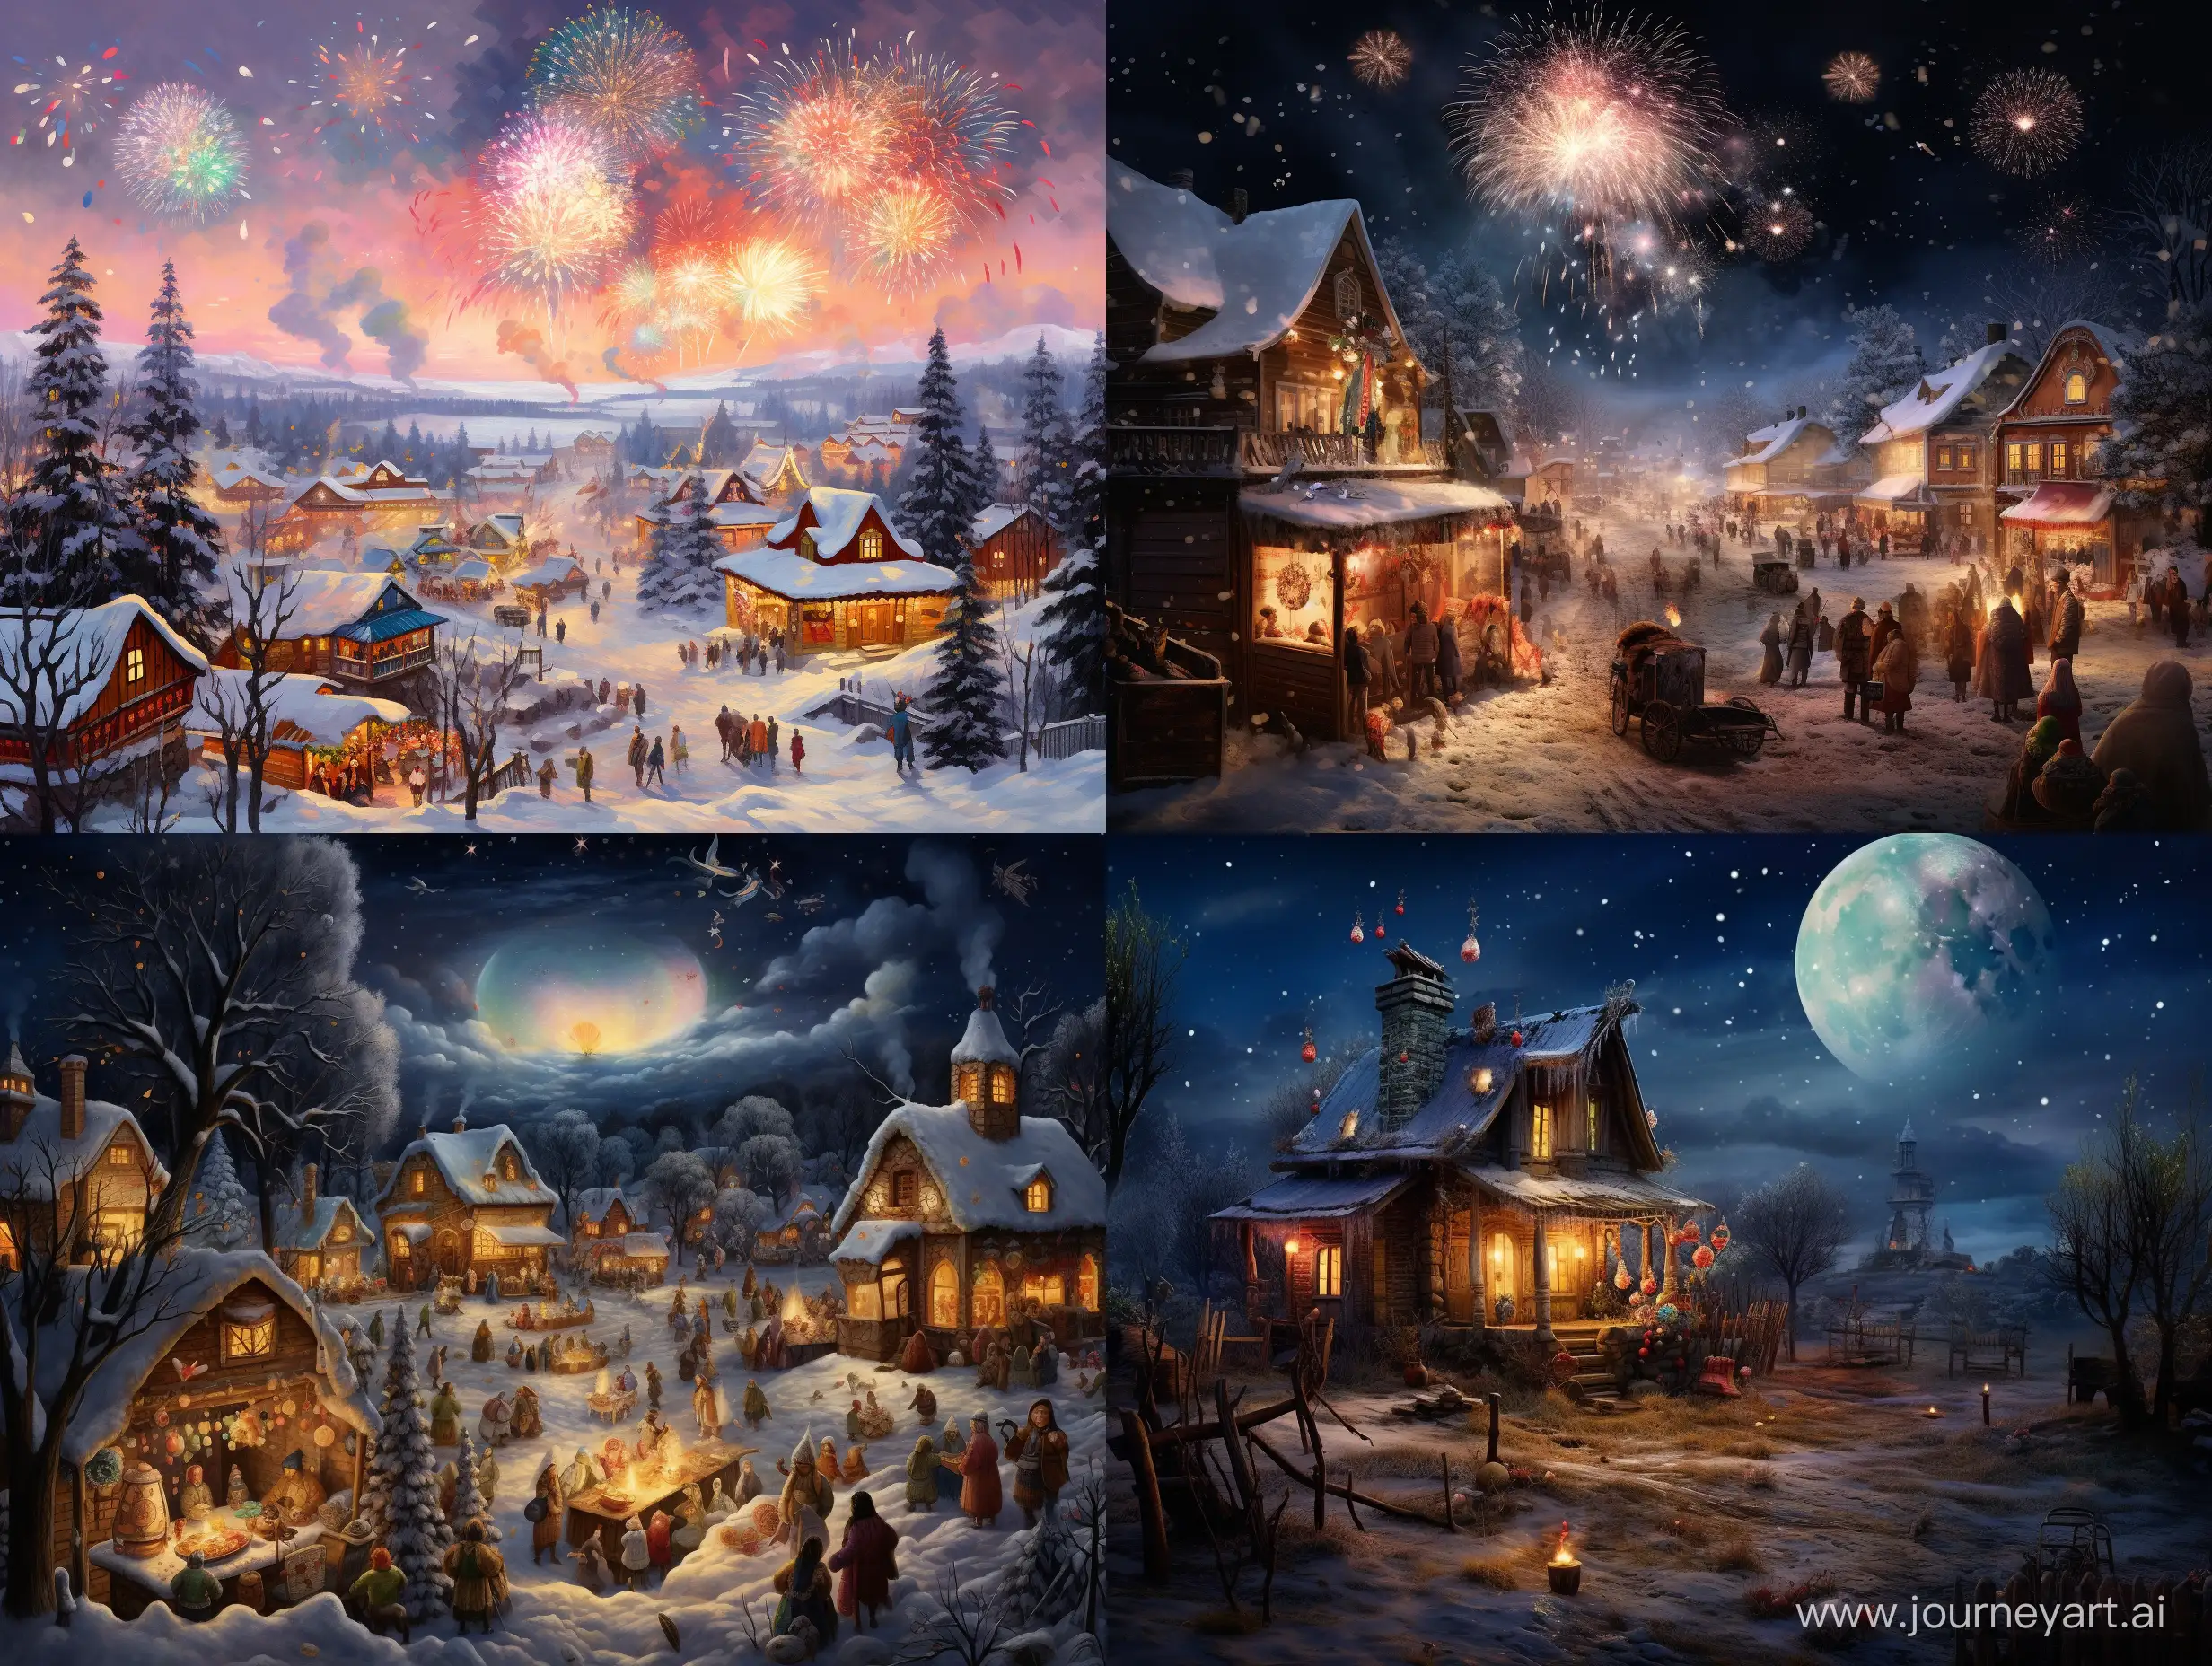 Celebrating-New-Year-with-Yolka-in-Khvalynsk-Joyful-Festive-Atmosphere